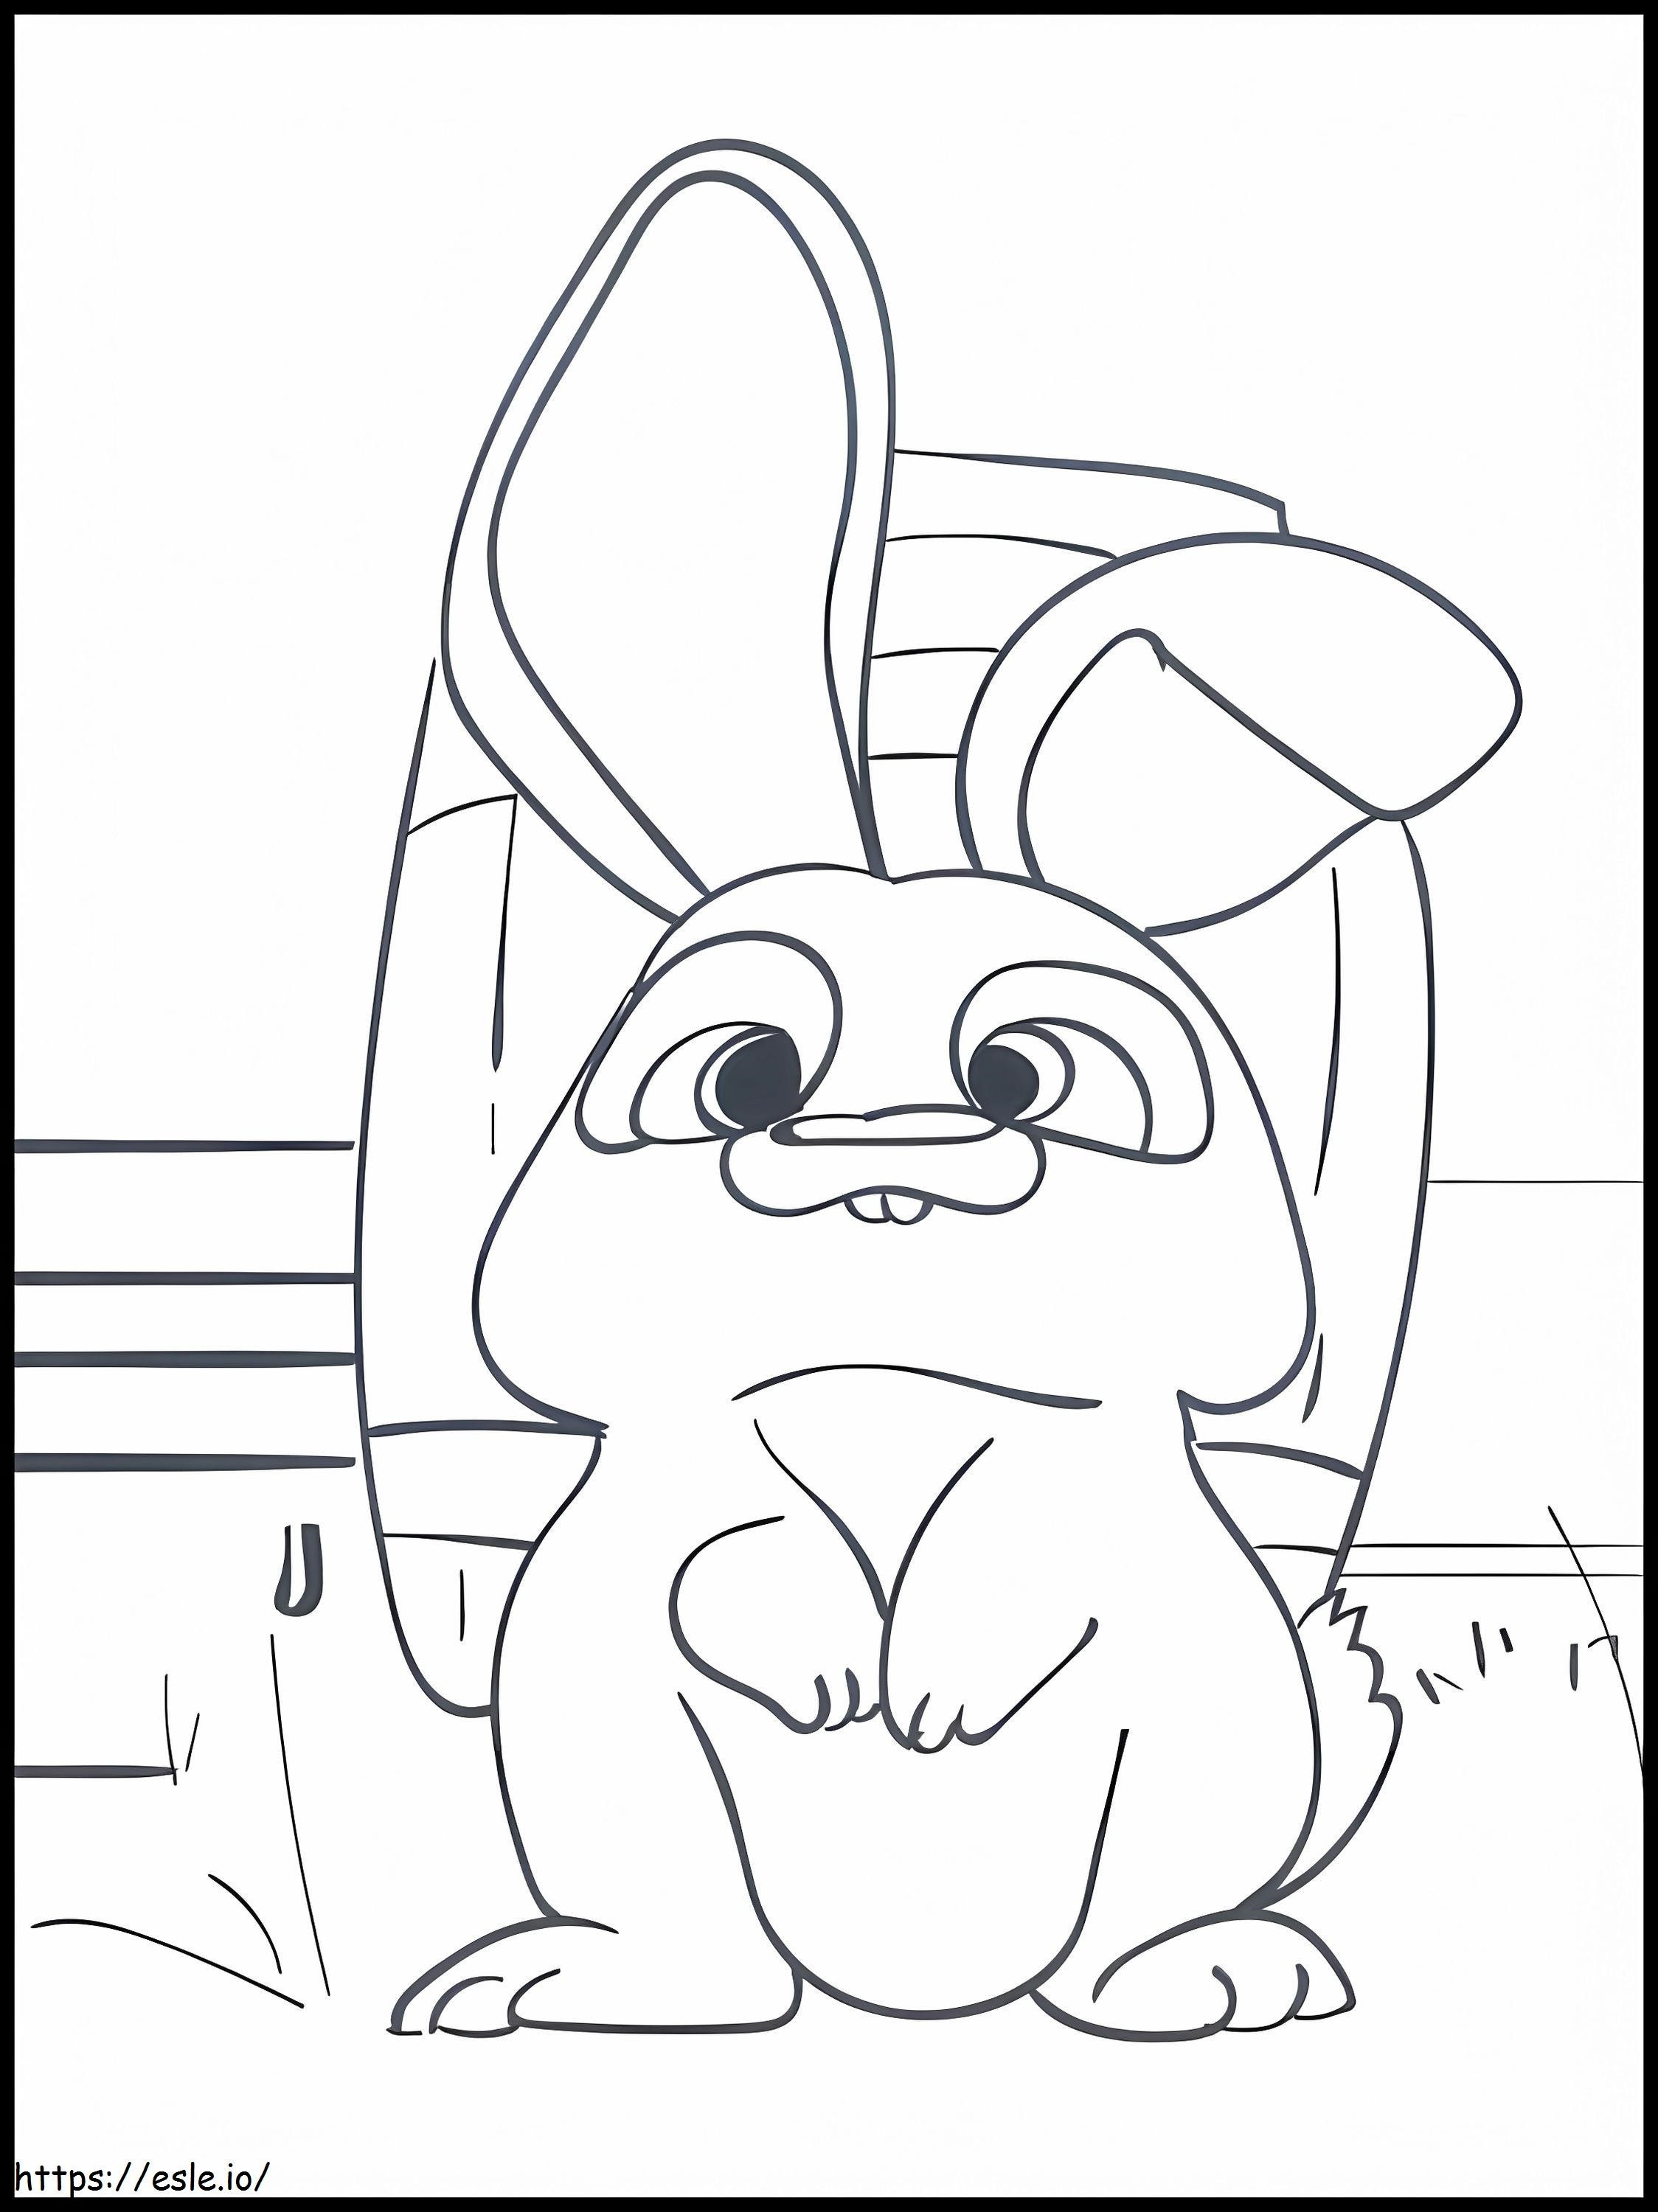 Ferdinand'S Bunny coloring page